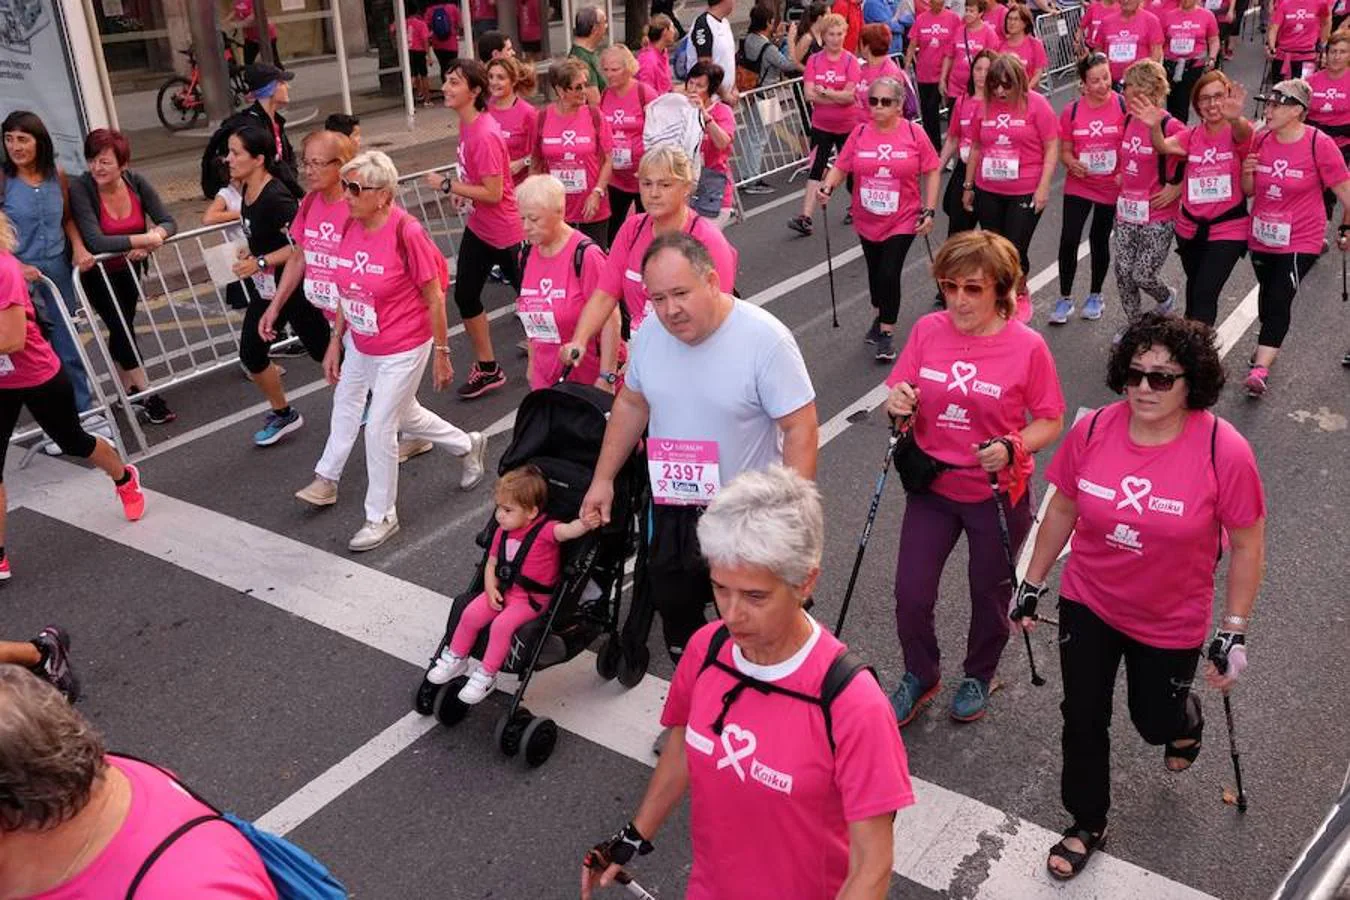 2.600 personas han participado este domingo en San Sebastián en la marcha 5k Katxalin, en solidaridad con las personas afectadas por el cáncer de mama